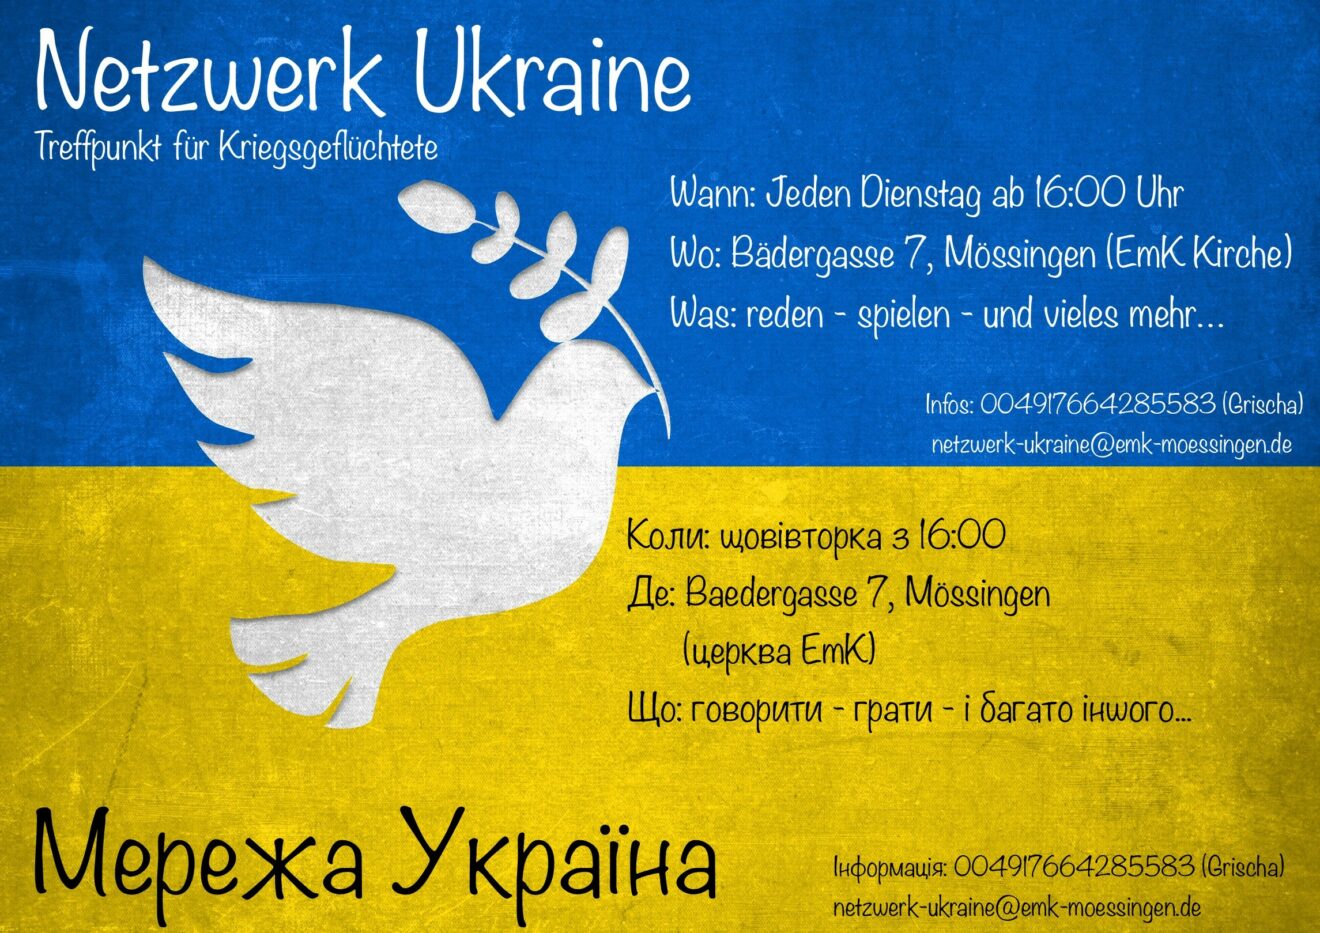 Netzwerk Ukraine